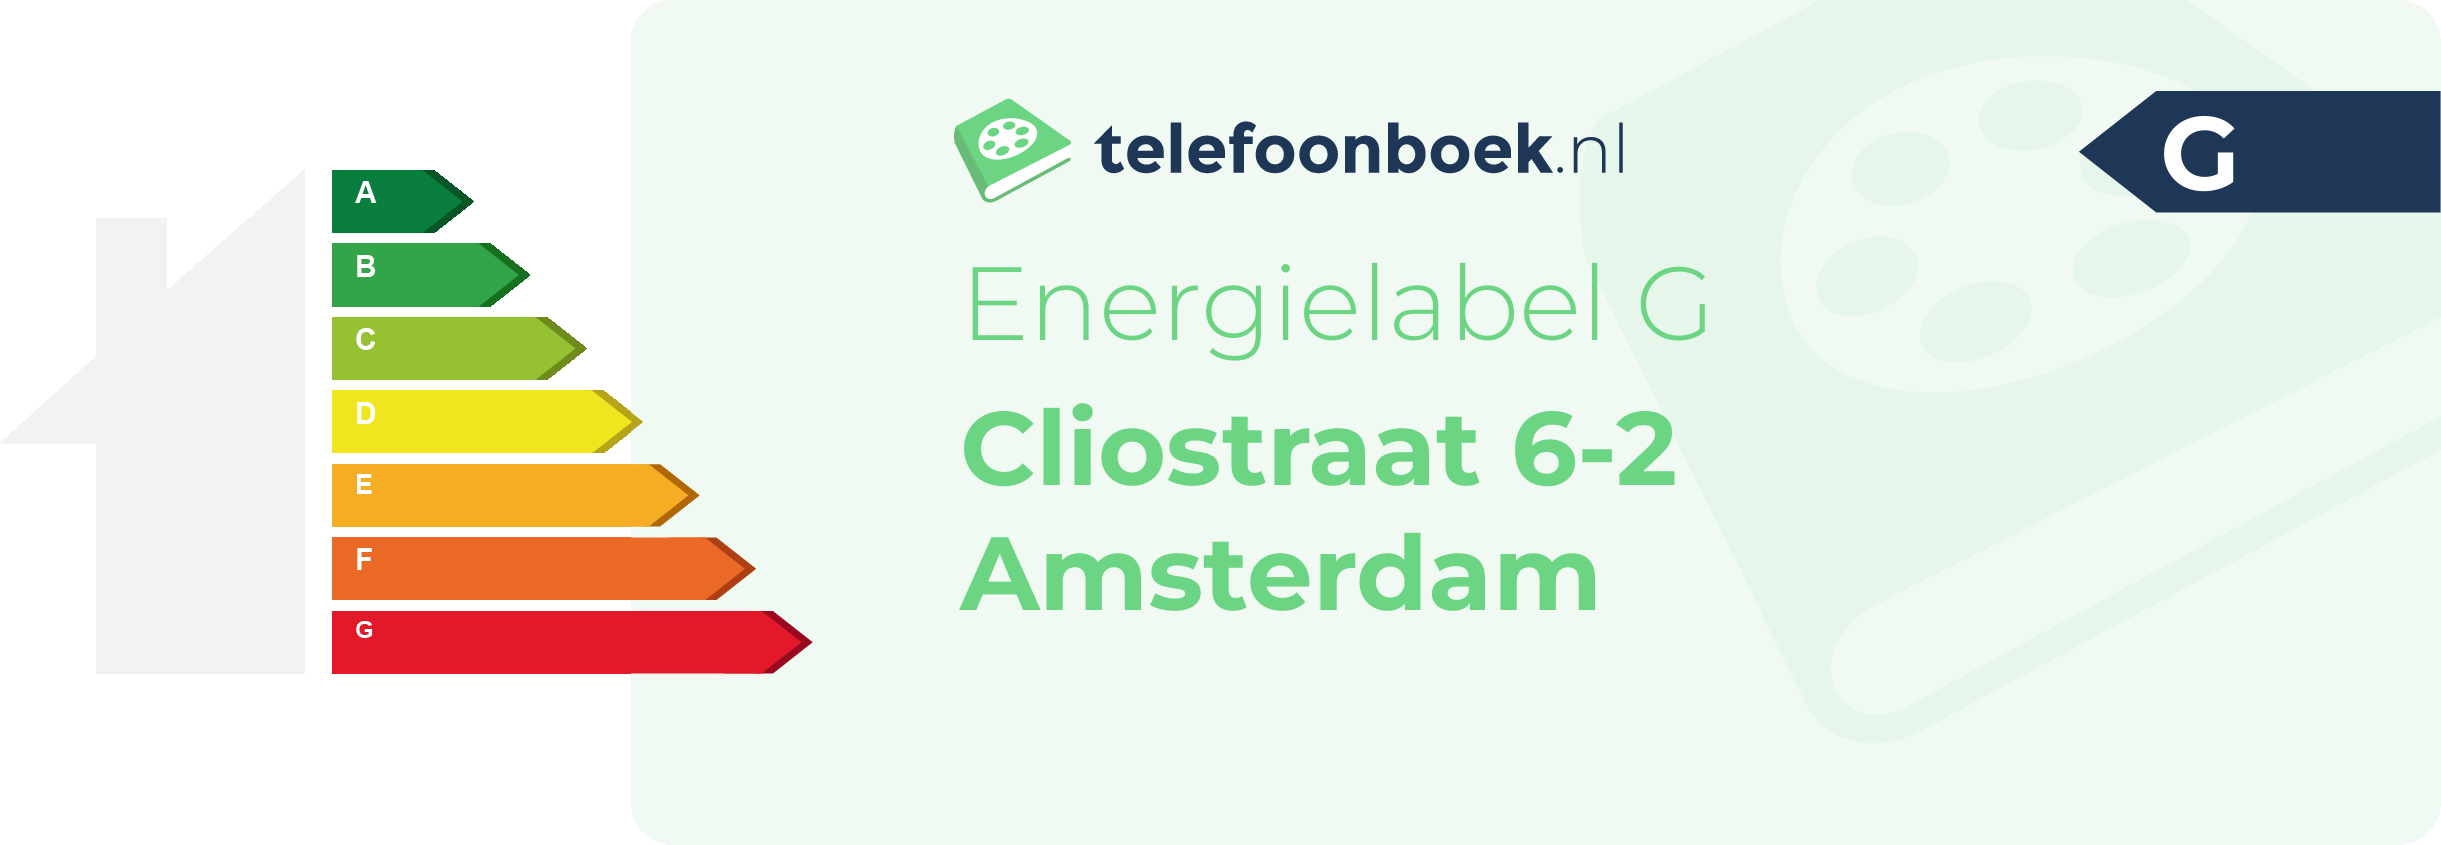 Energielabel Cliostraat 6-2 Amsterdam